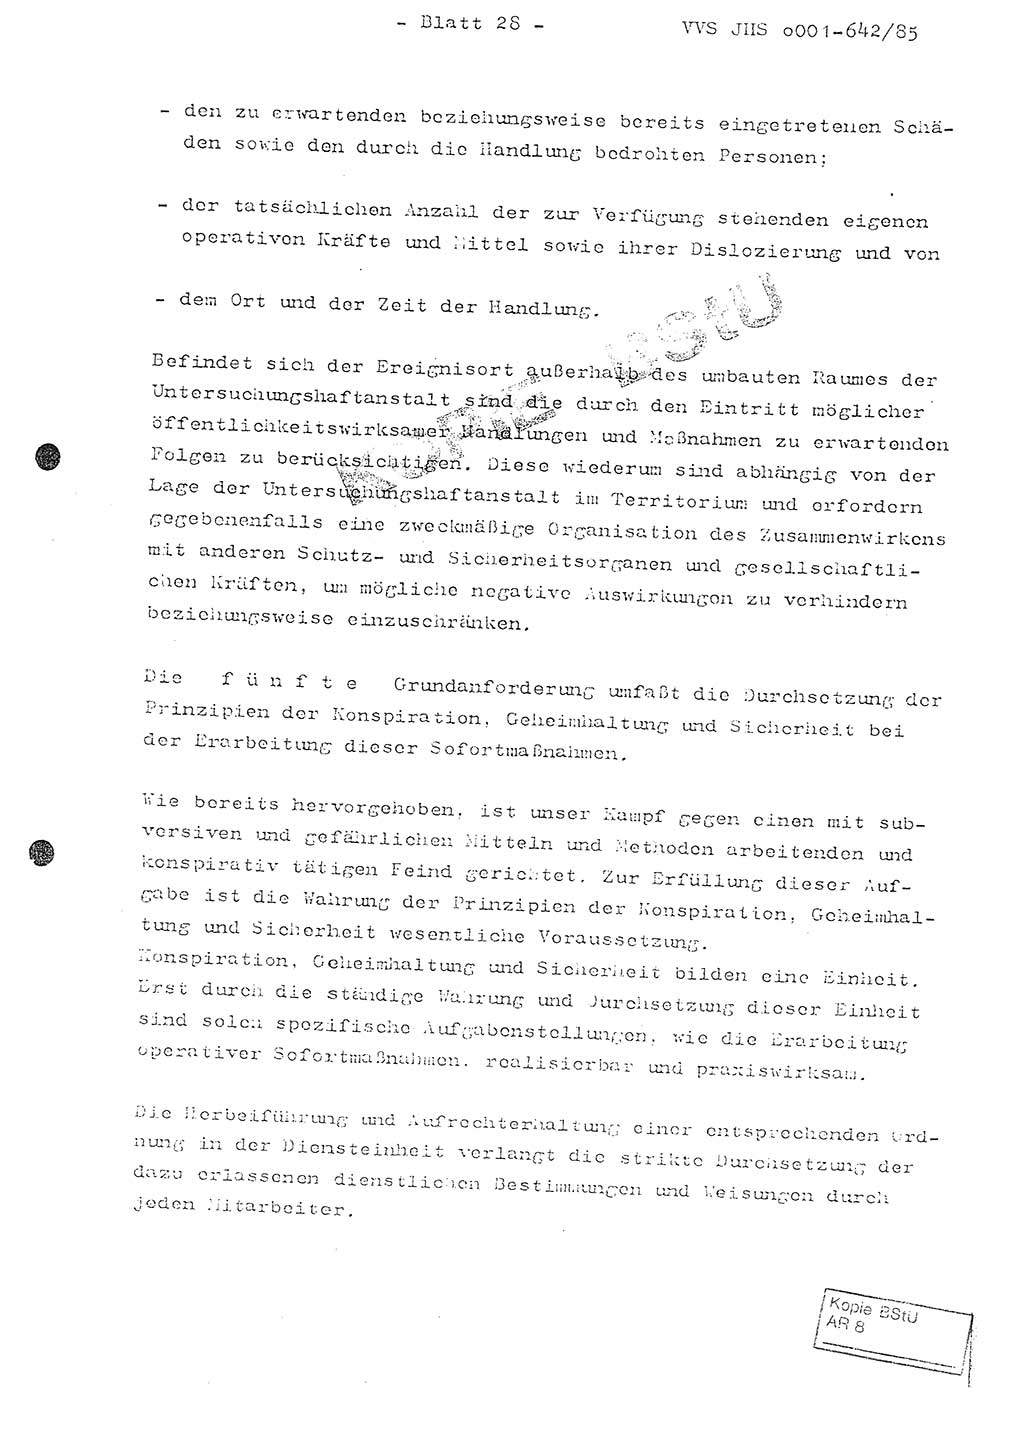 Fachschulabschlußarbeit Oberleutnant Lothar Fahland (Abt. ⅩⅣ), Ministerium für Staatssicherheit (MfS) [Deutsche Demokratische Republik (DDR)], Juristische Hochschule (JHS), Vertrauliche Verschlußsache (VVS) o001-642/85, Potsdam 1985, Blatt 28 (FS-Abschl.-Arb. MfS DDR JHS VVS o001-642/85 1985, Bl. 28)